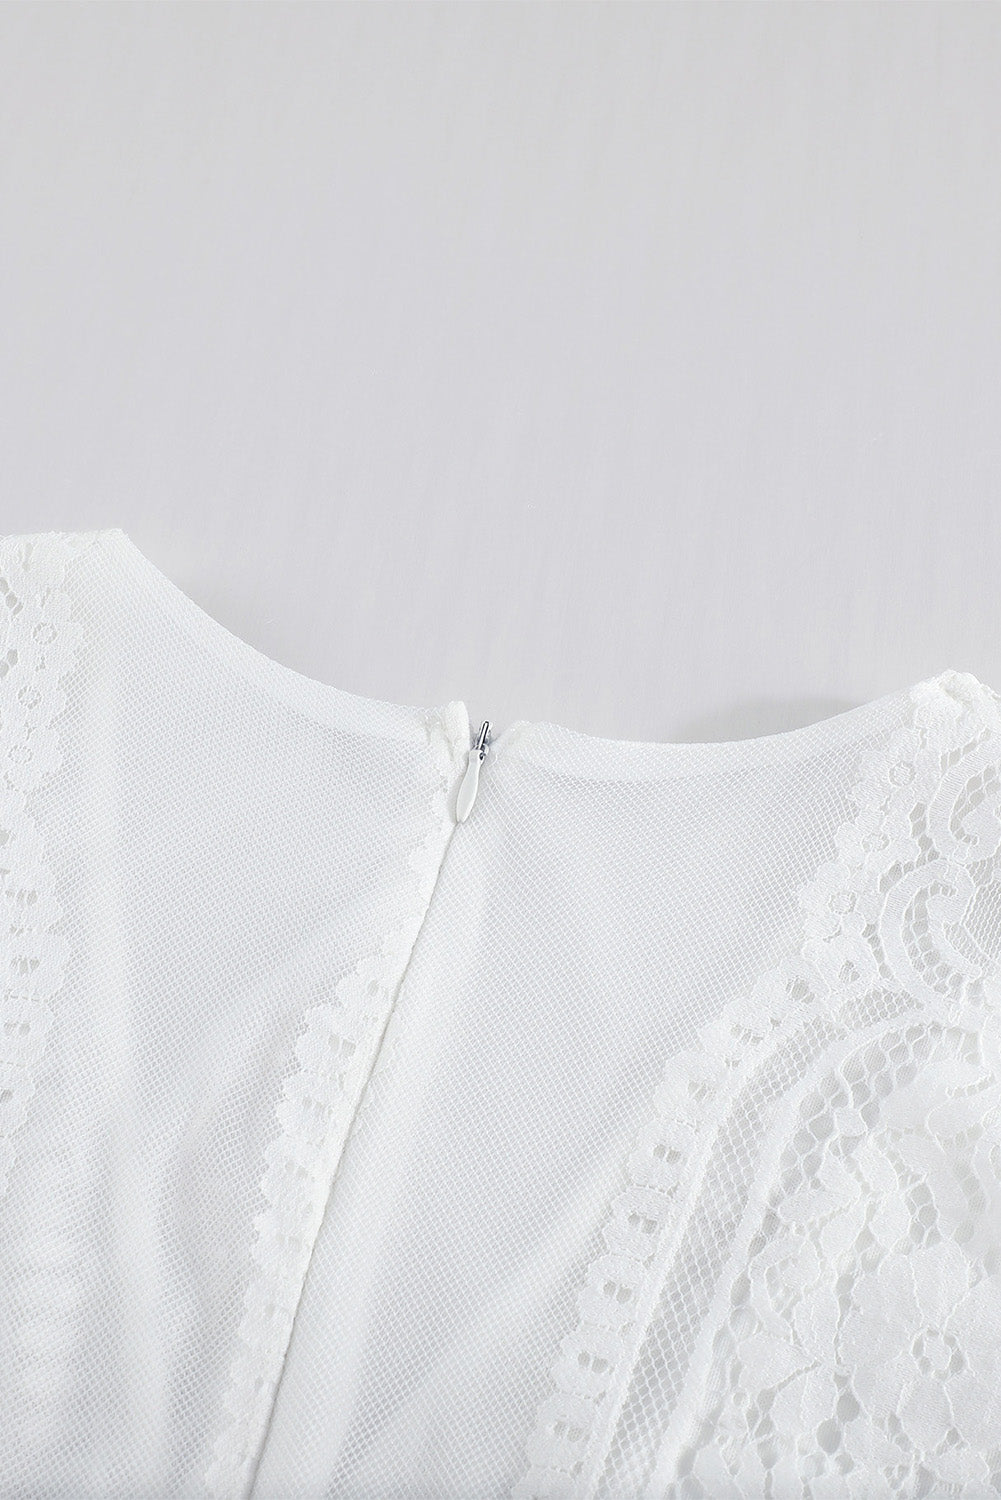 Elegant White Boho Lace Maxi Dresses